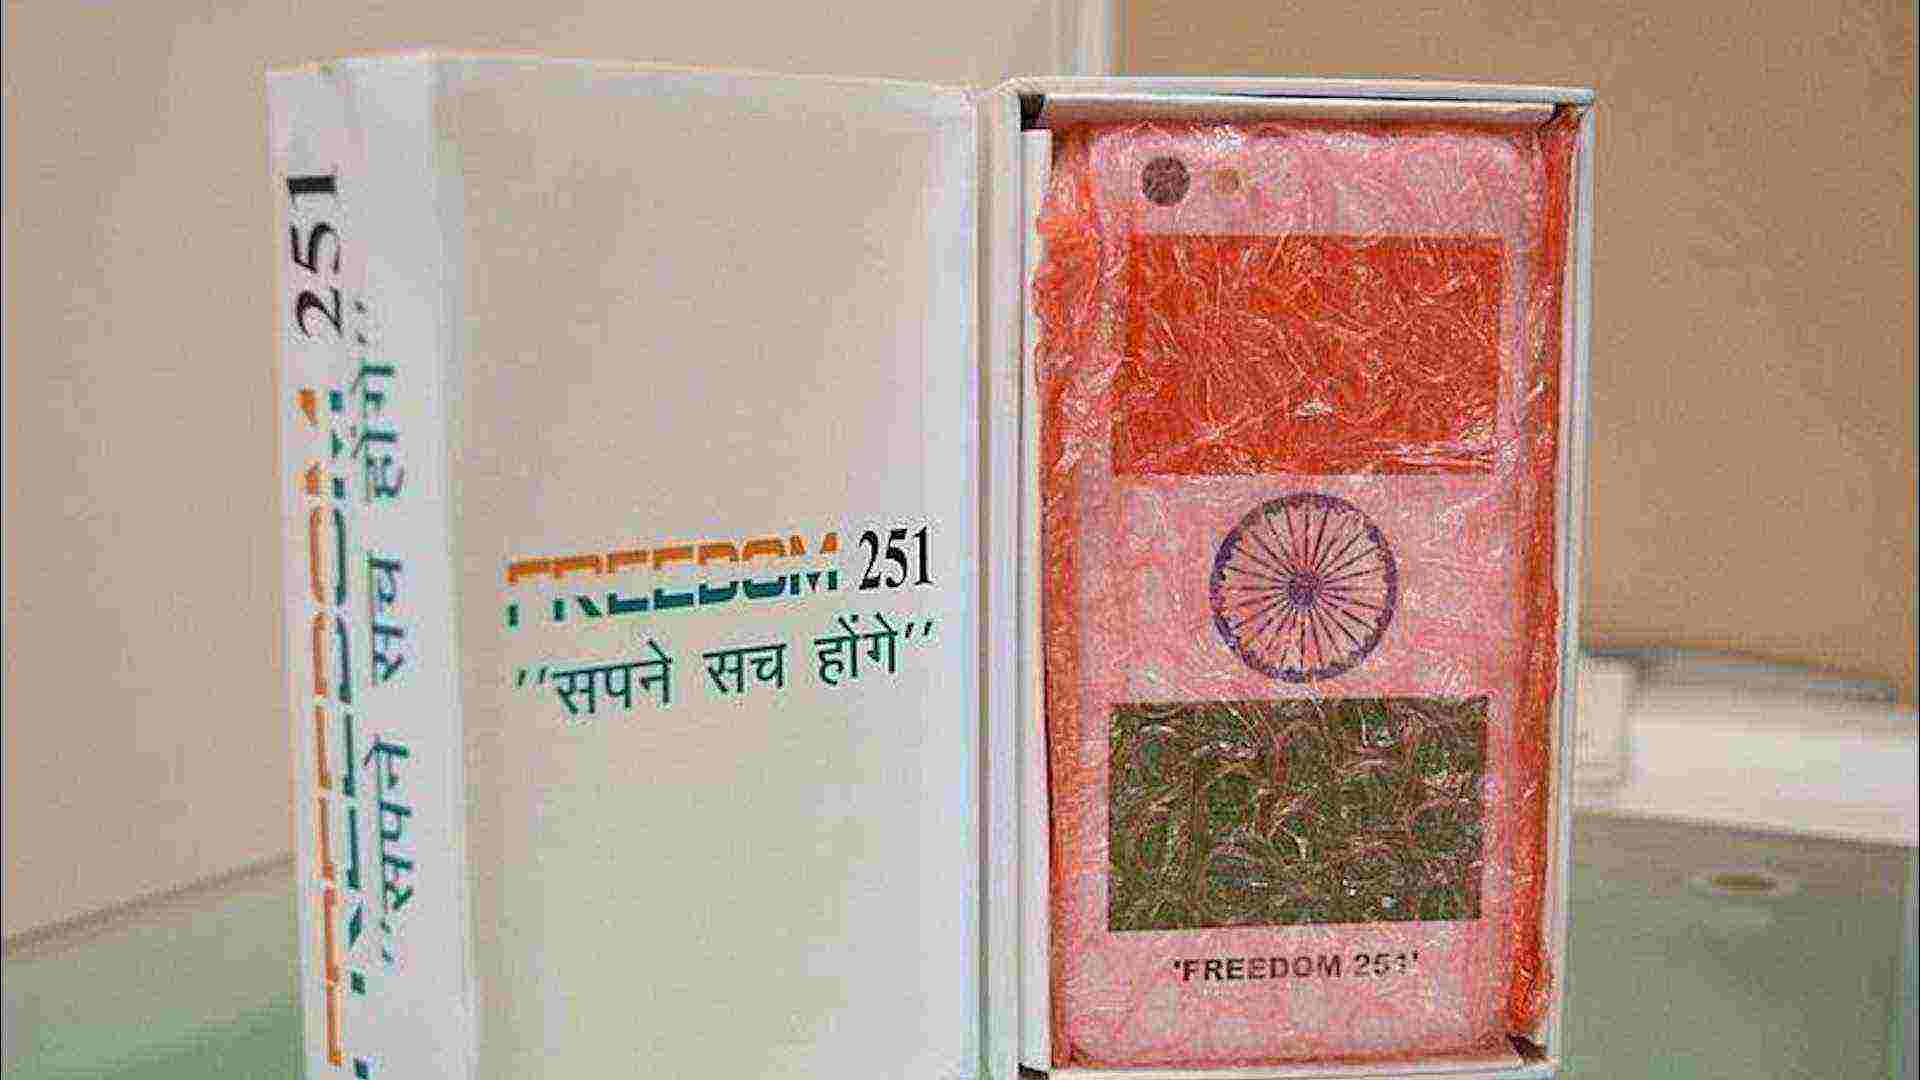 Смартфон за $4 и бизнес по-индийски!